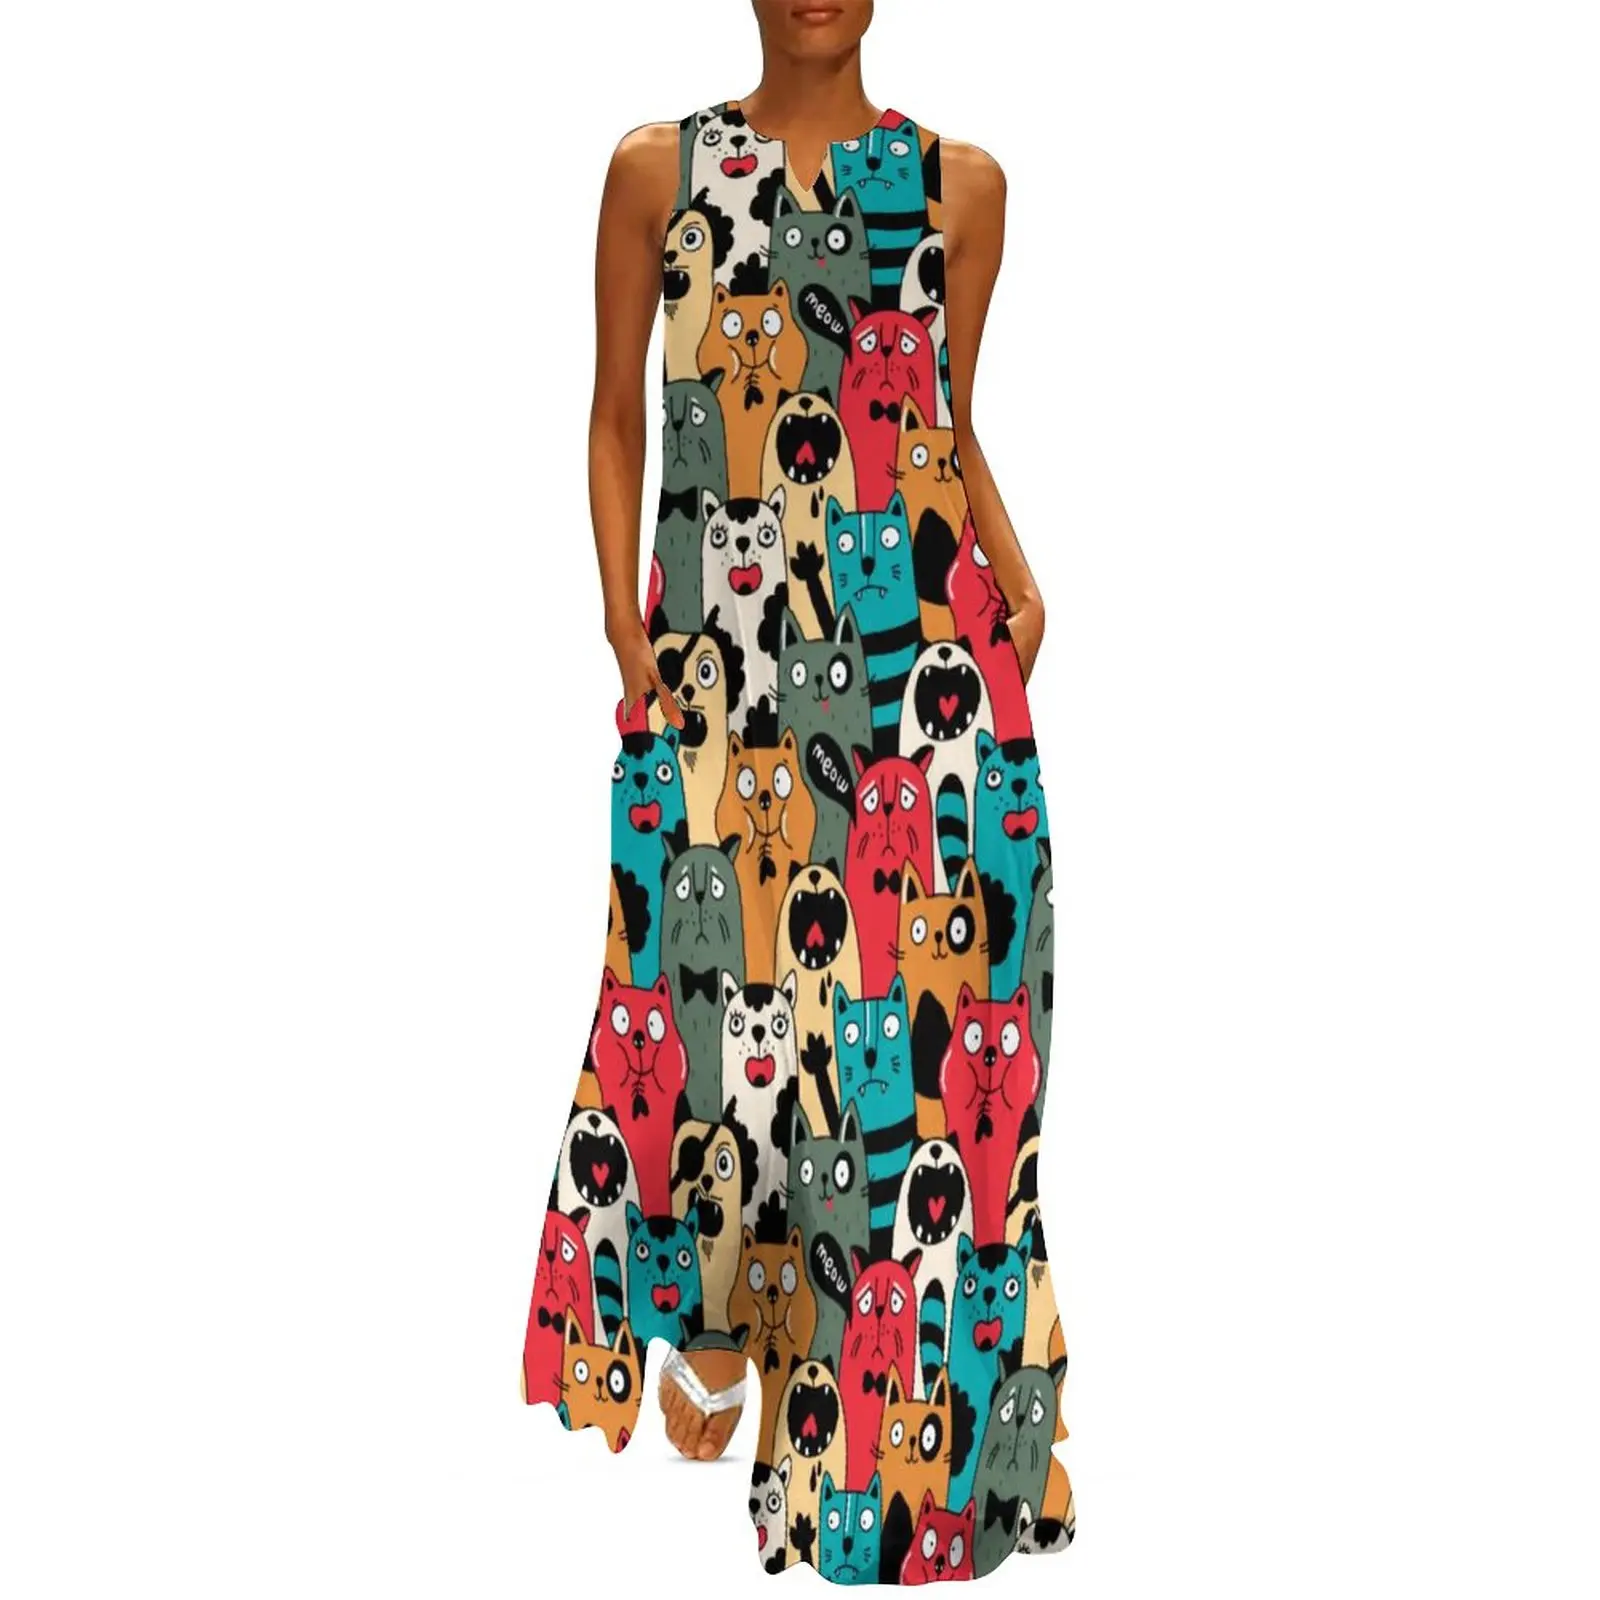 

Женское длинное платье с принтом кошки, винтажное пляжное платье макси в уличном стиле с забавным принтом животных, подарок на день рождения, для лета